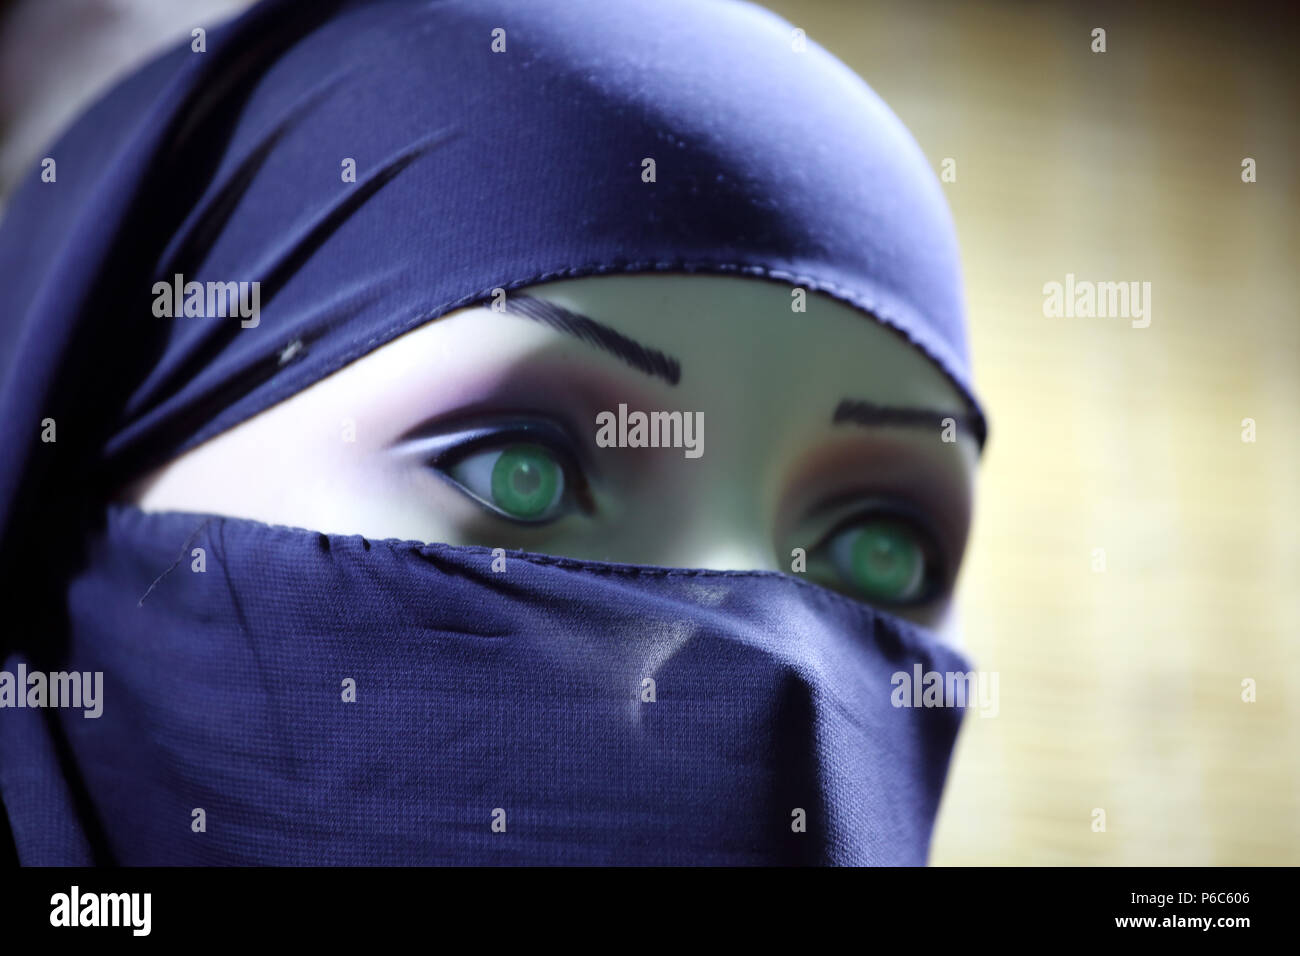 Arab Mannequin Banque De Photographies Et Dimages à Haute Résolution Alamy 